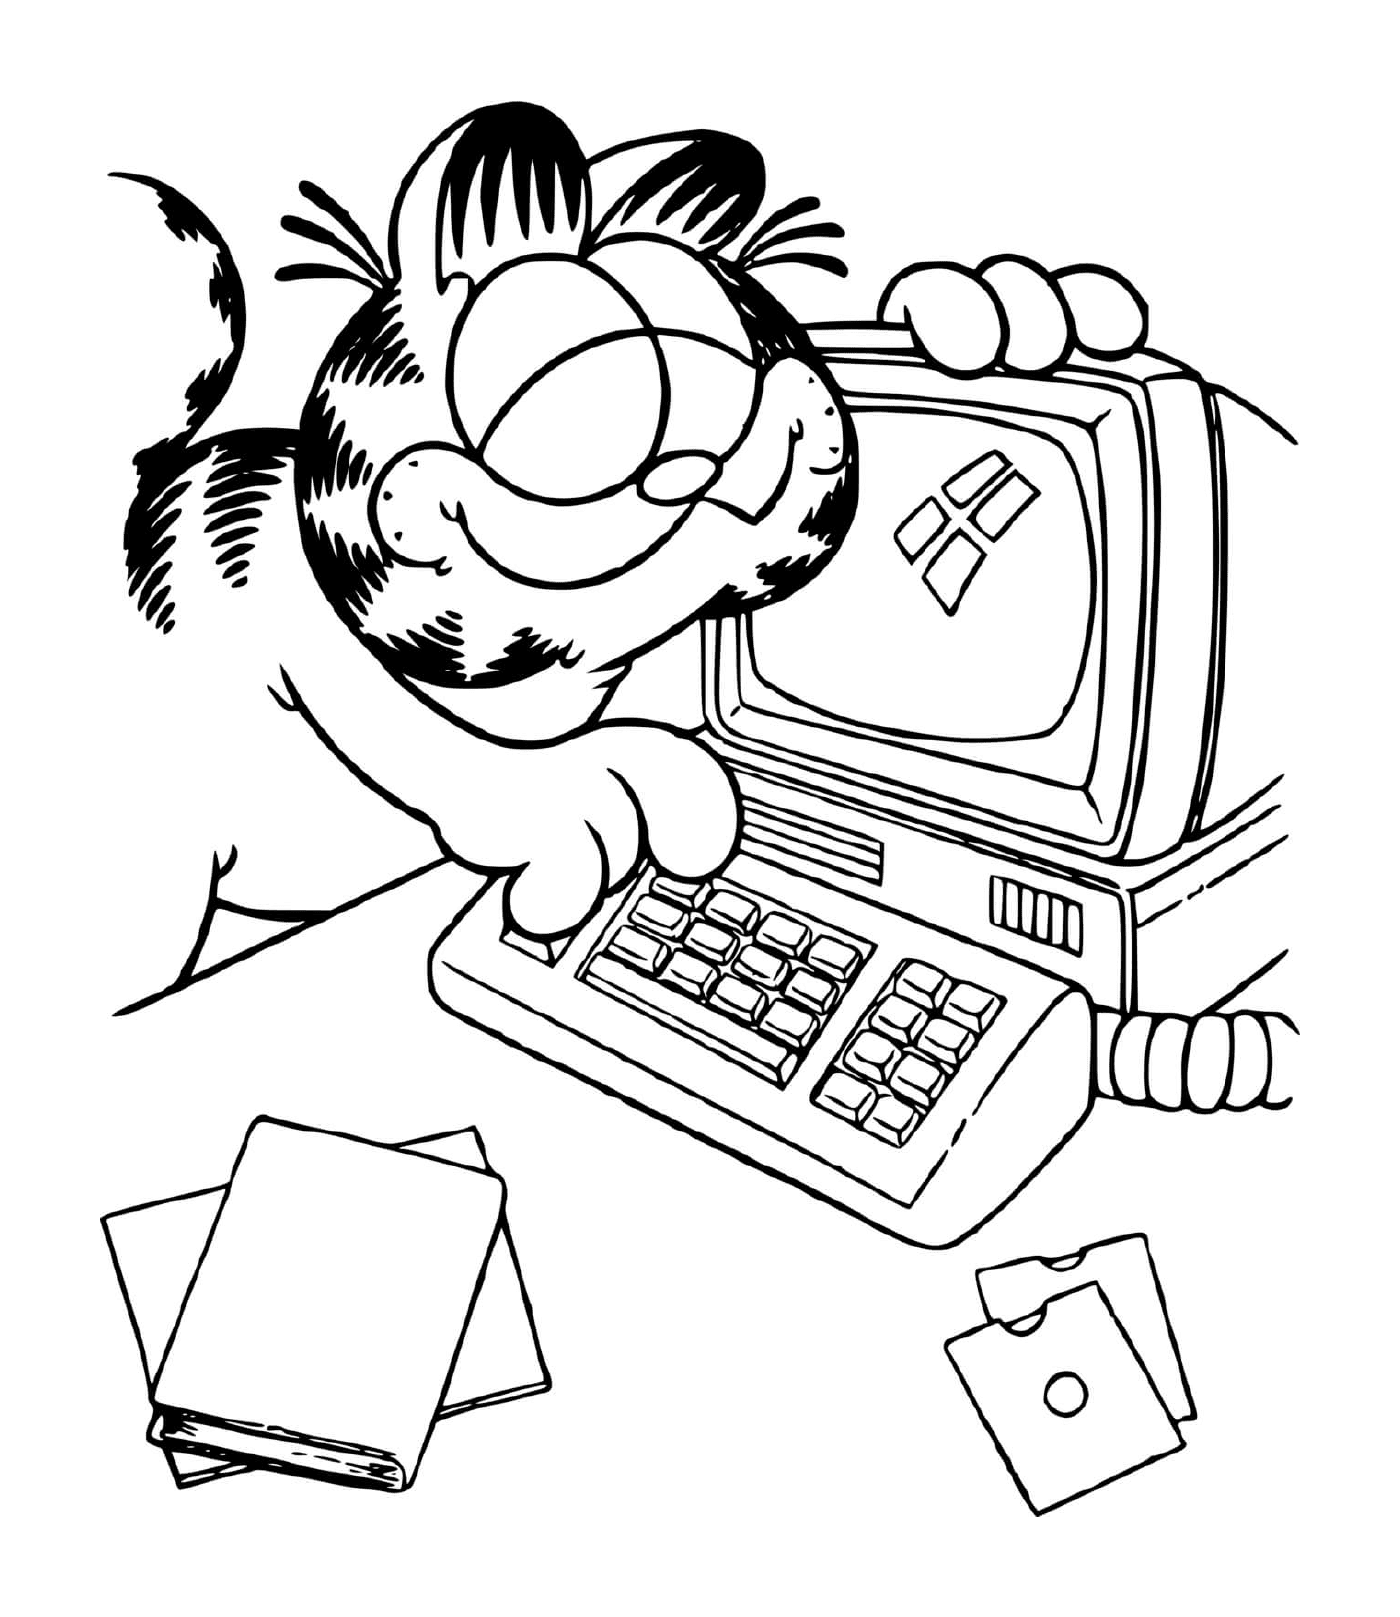  Garfield usa un computer 